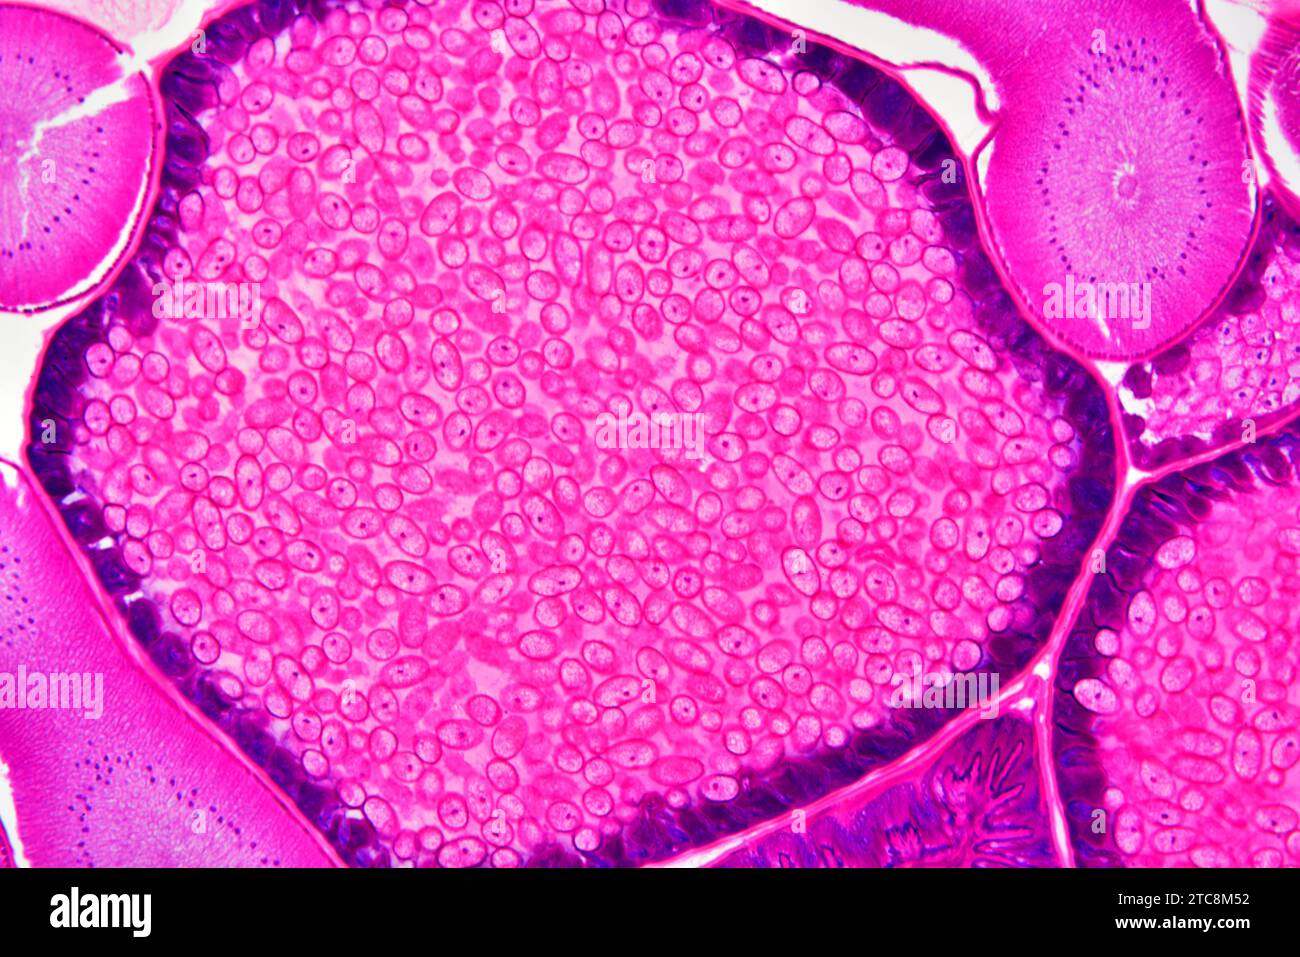 Ascaris lumbricoides femmine che mostrano ovaie e utero con uova. Microscopio leggero X150 con larghezza di 10 cm. Foto Stock